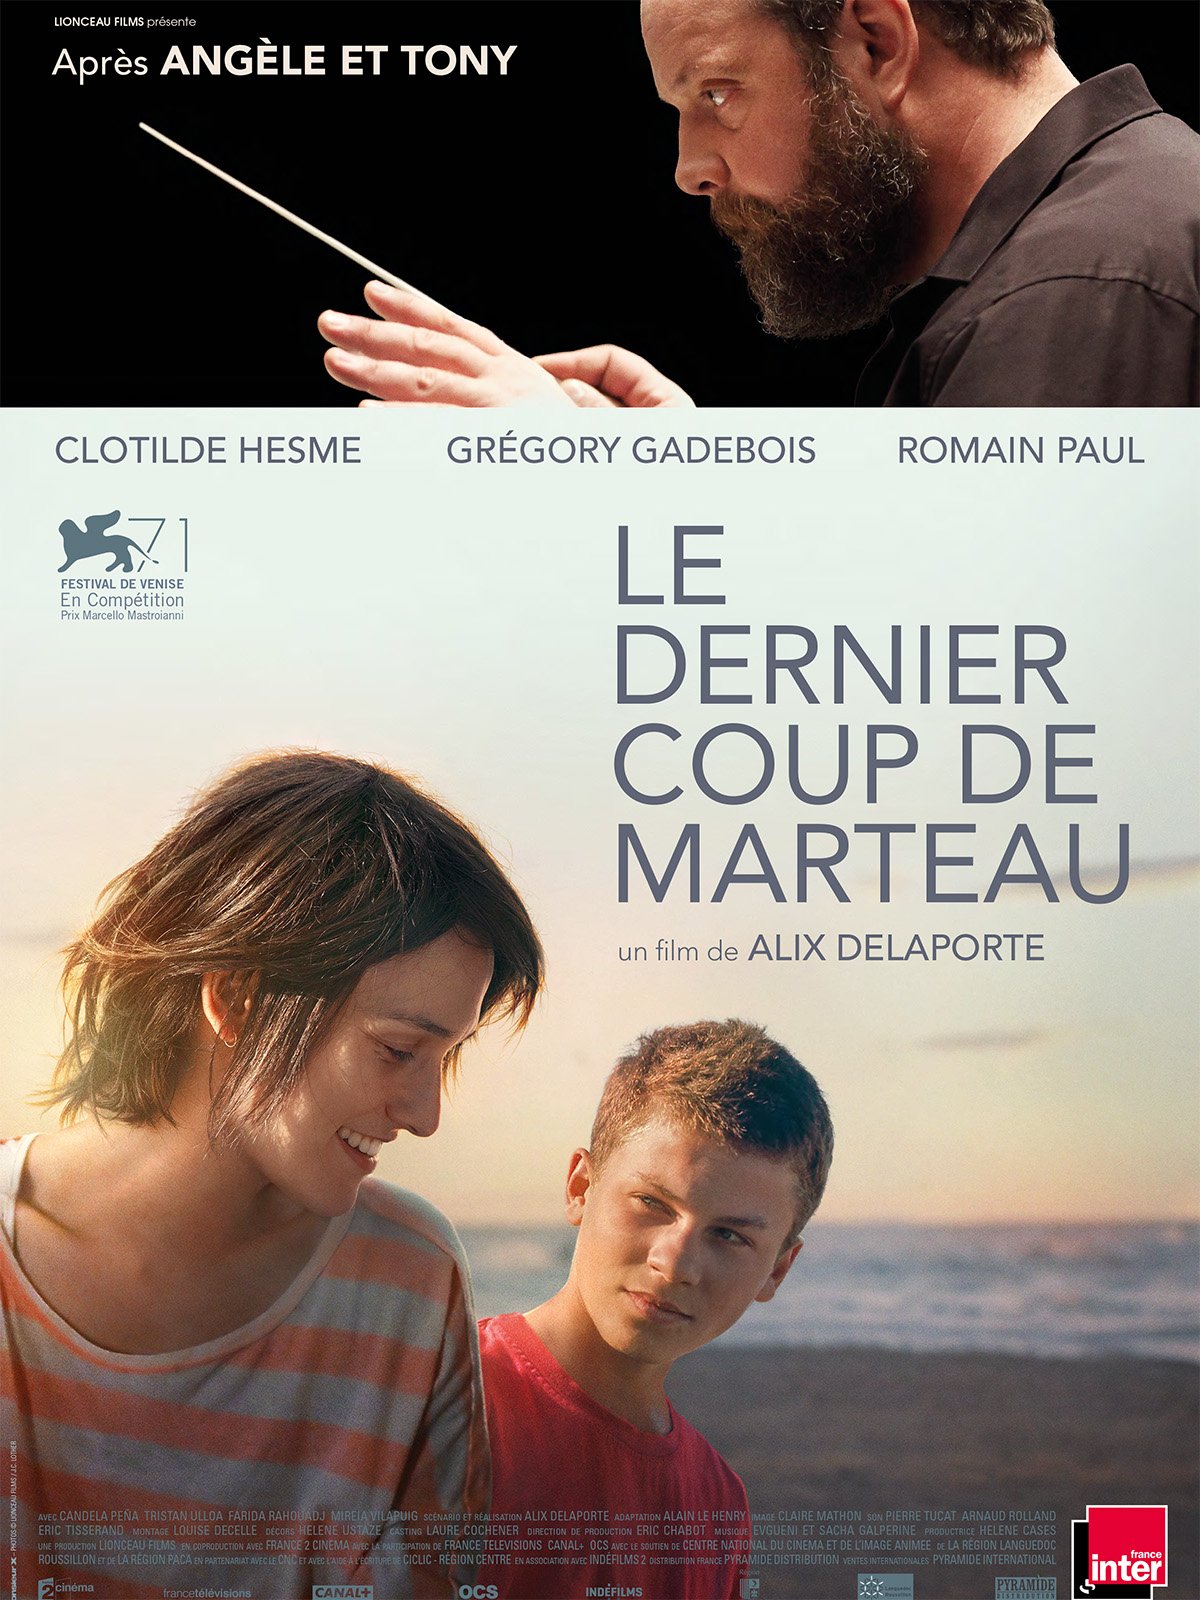 Poster of the movie Le Dernier coup de marteau